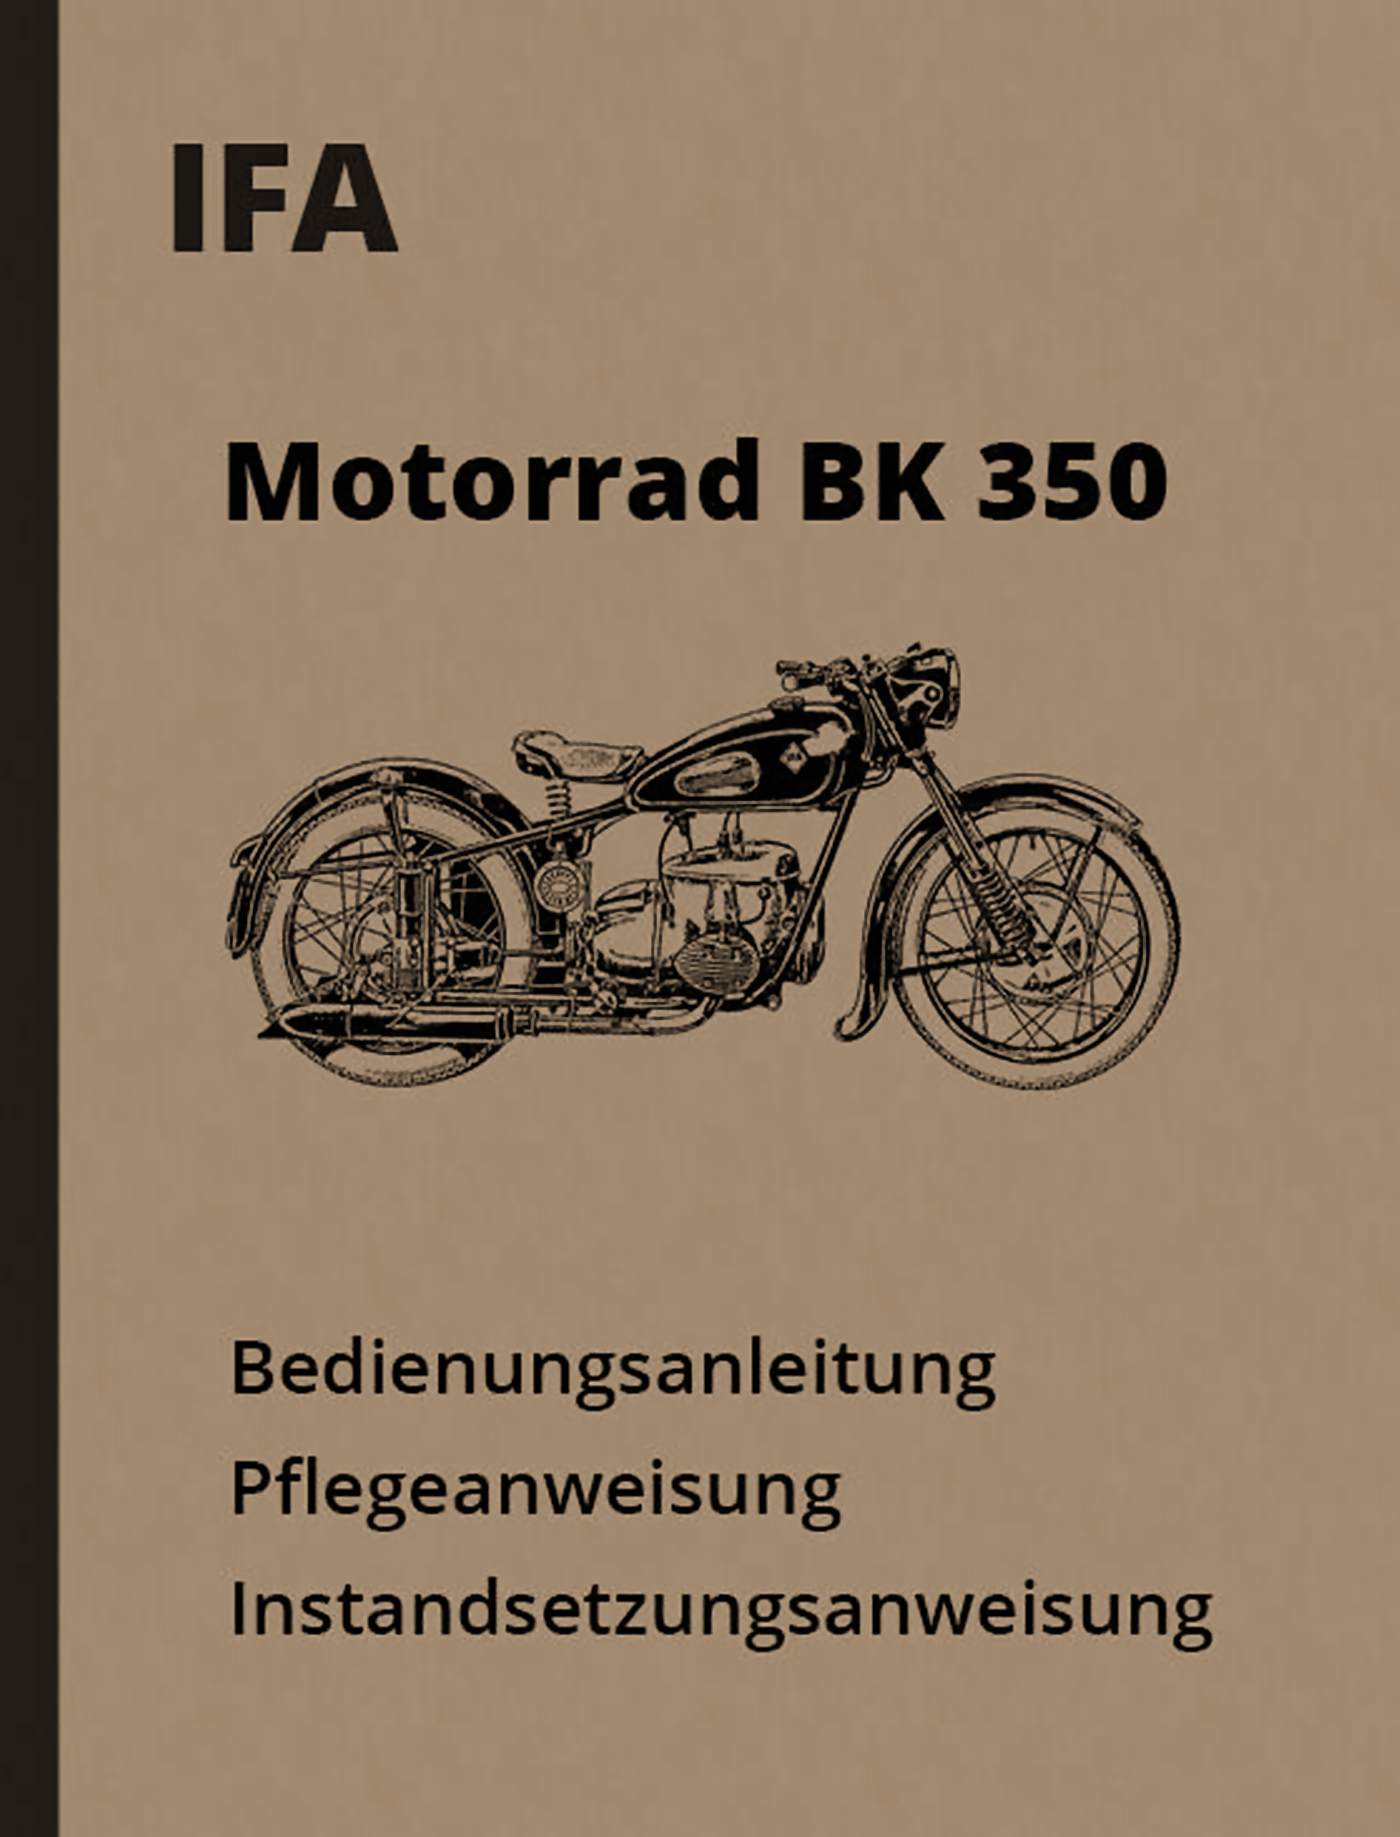 Titelseite Motorrad Betriebsanleitung IFA MZ BK 350 / Baujahr 1952, 1953, 1954, 1955, 1956, 1957, 1958 und 1959